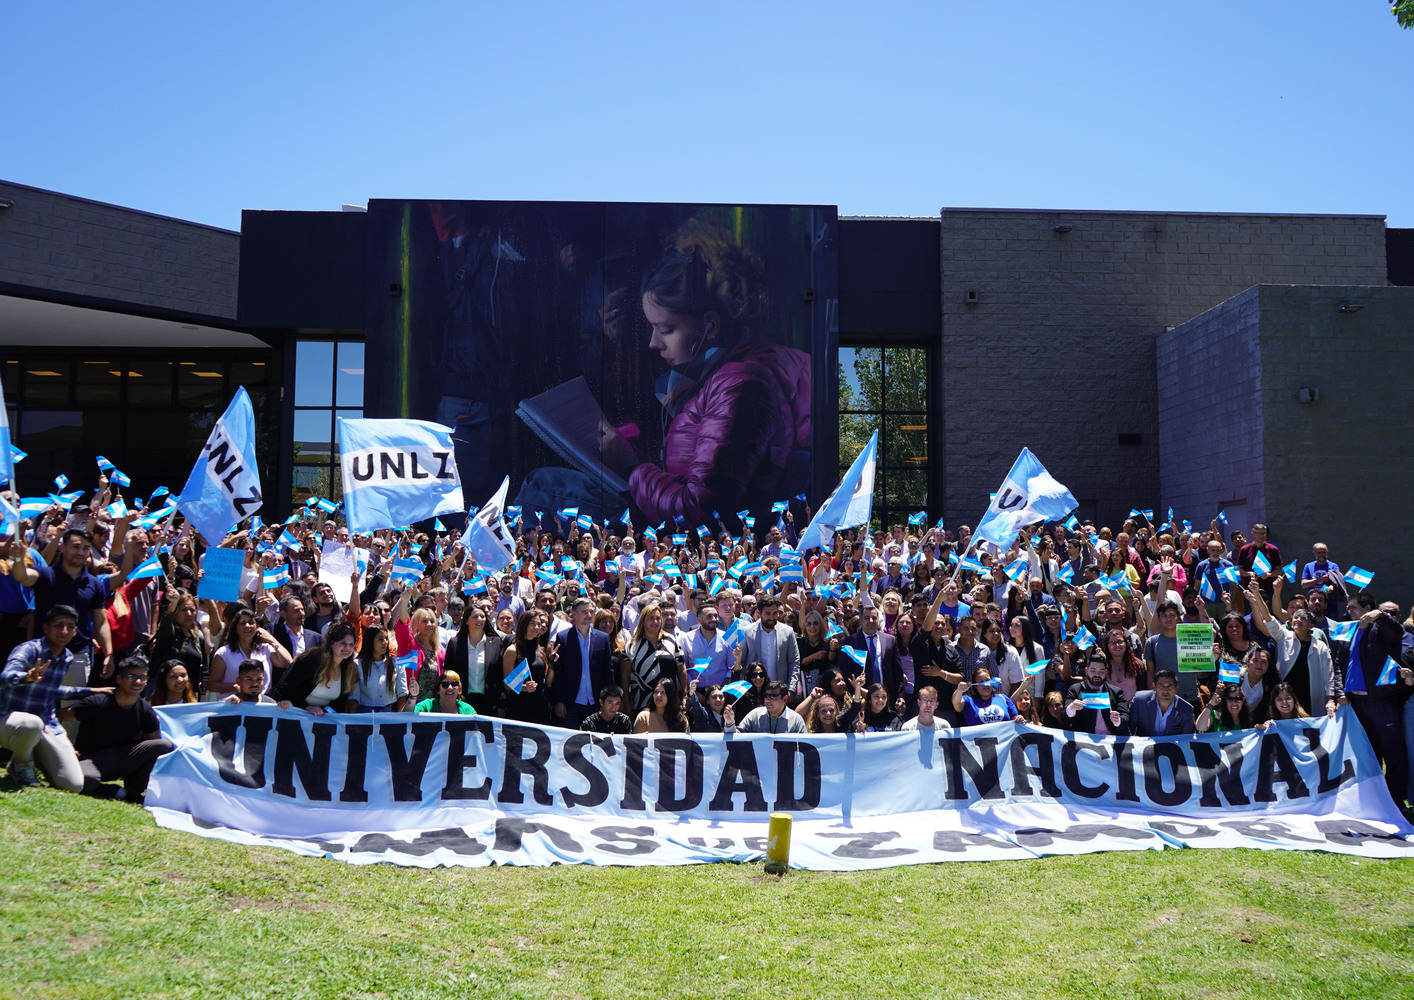 La comunidad educativa de la UNLZ realizó un acto en defensa de la educación pública y gratuita